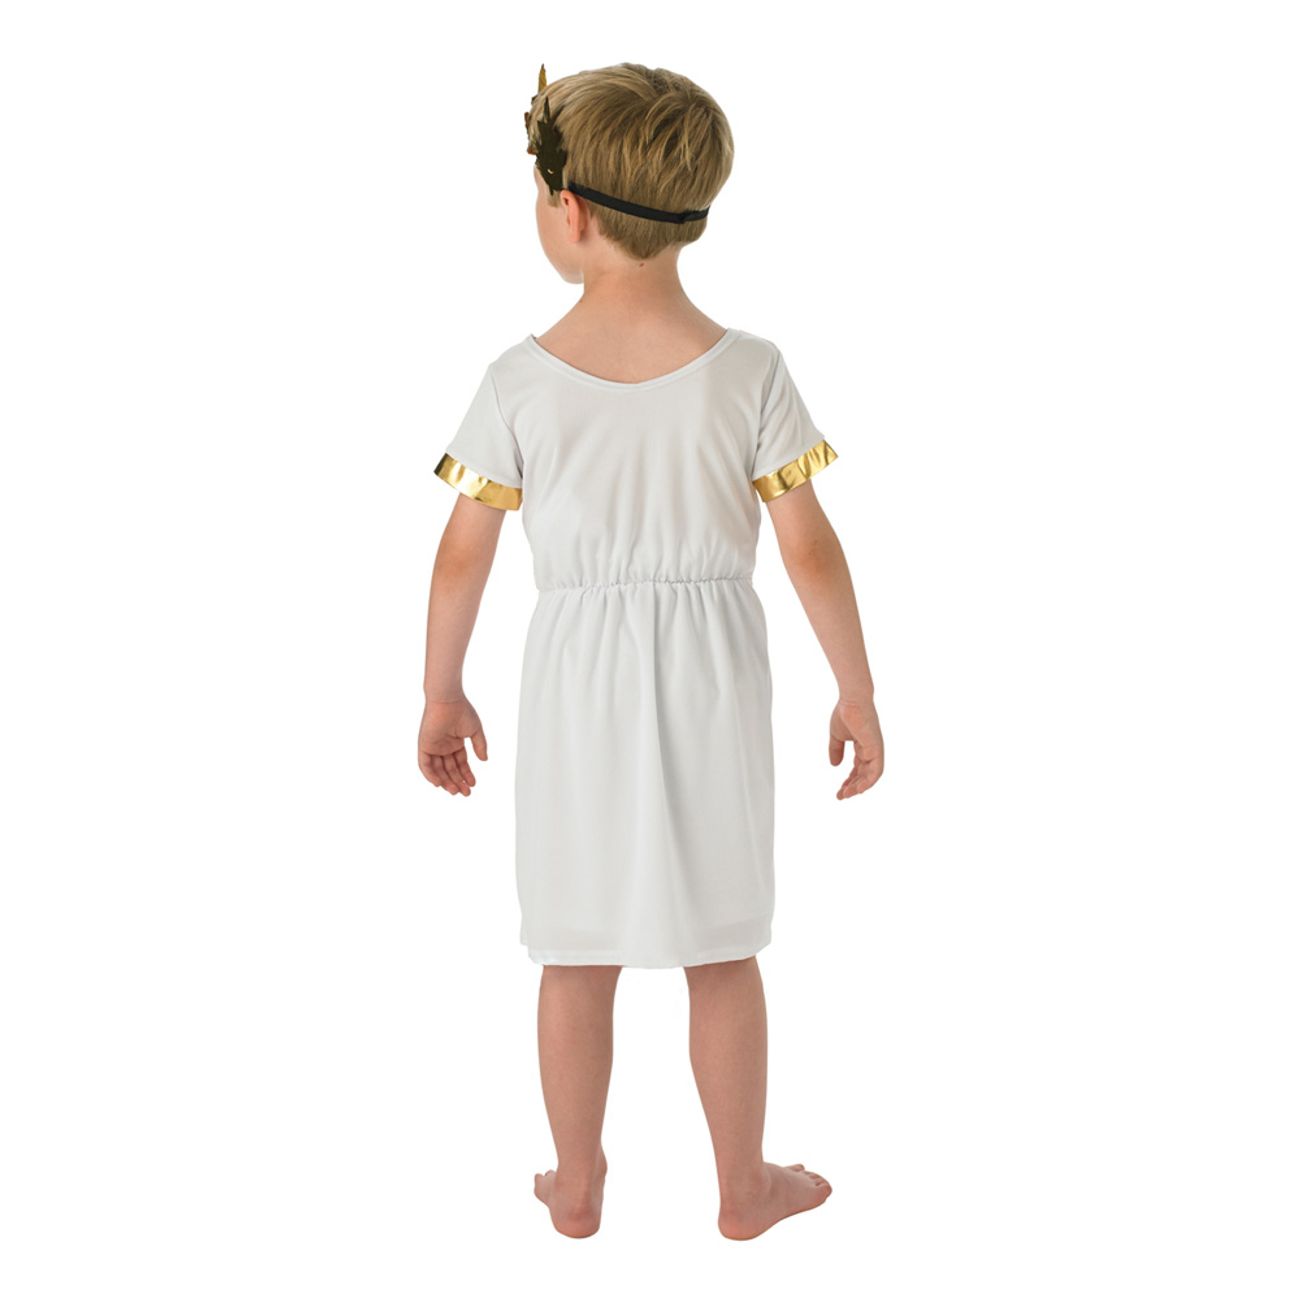 romersk-pojke-barn-maskeraddrakt-2